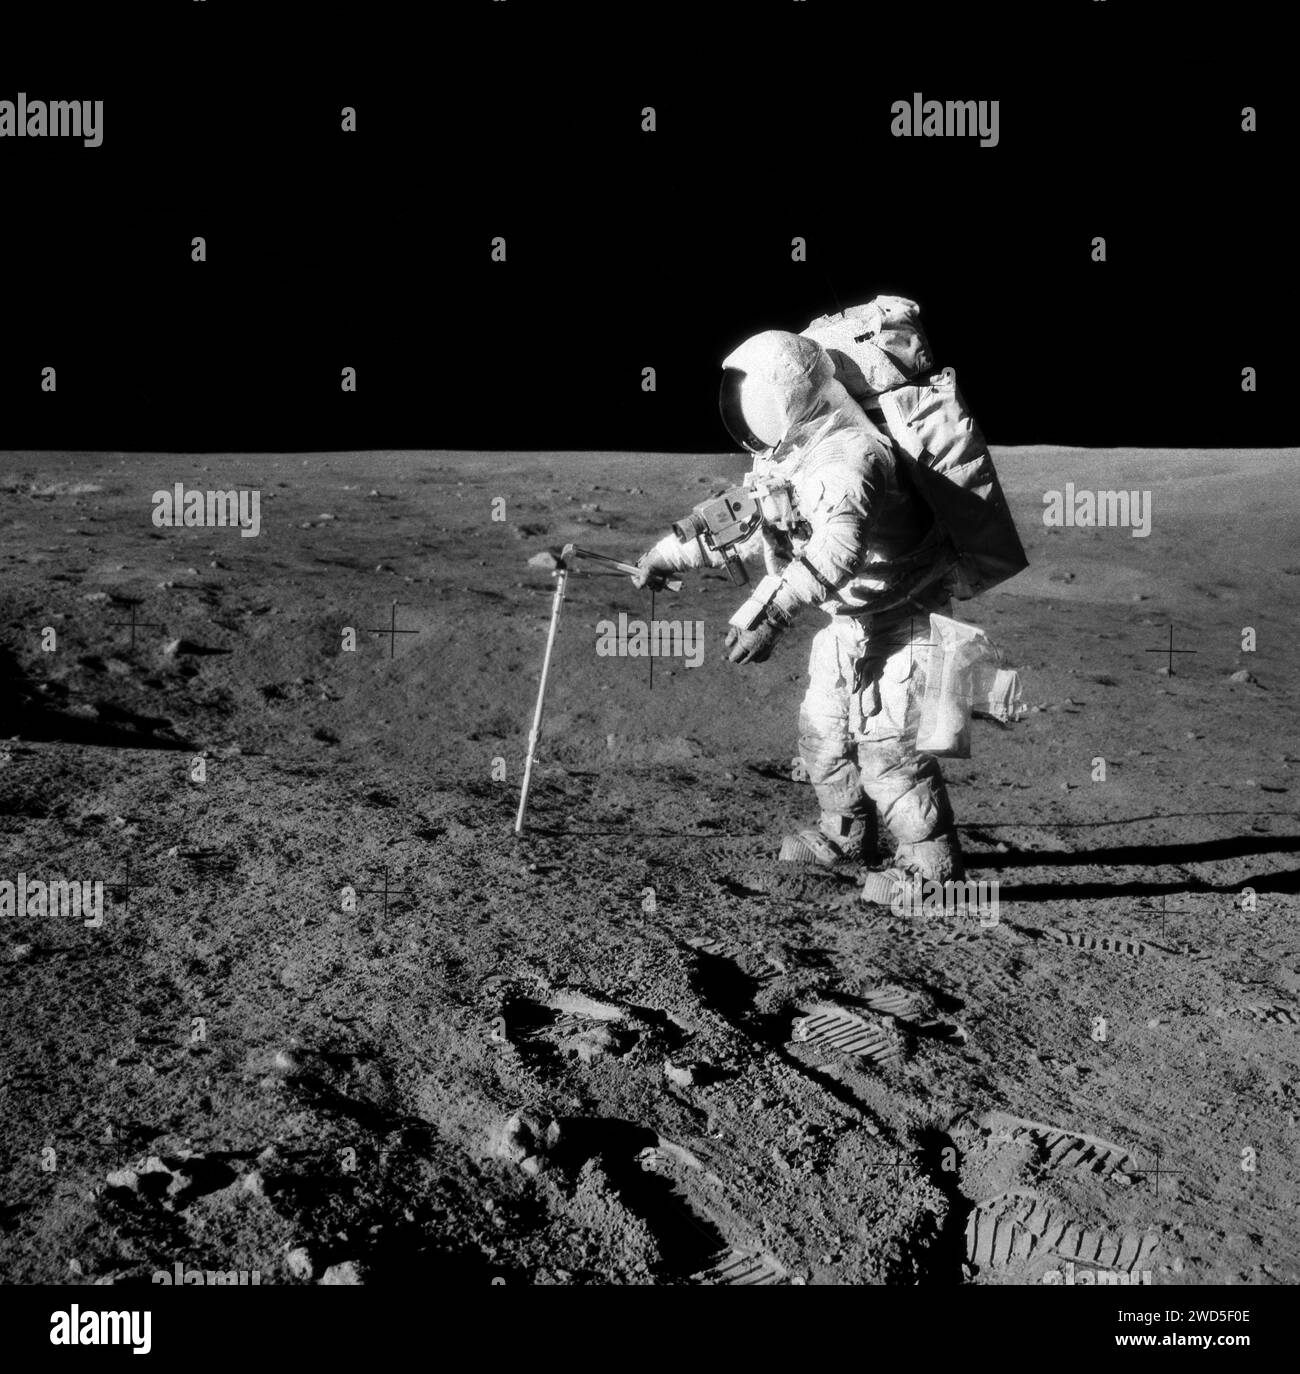 American astronaut Alan L. Bean, lunar module pilot, driving core sample tube into lunar surface during Apollo 12 extravehicular activity, Johnson Space Center, NASA, November 20, 1969 Stock Photo